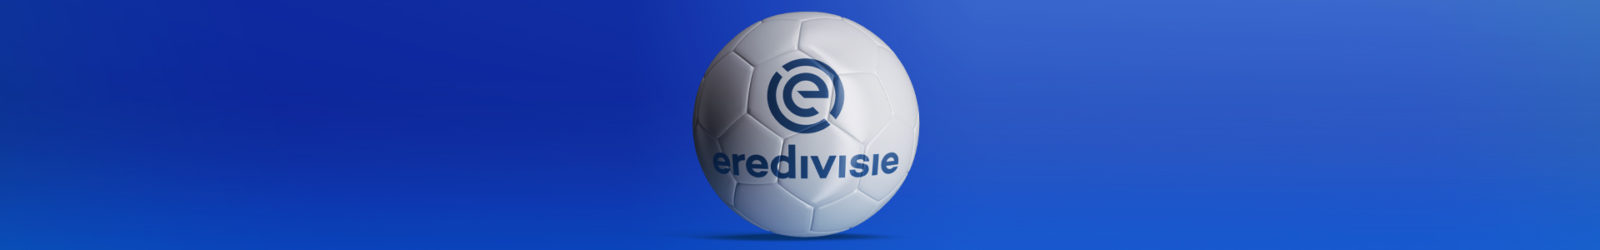 Eredivisie Liga holenderska statystyki